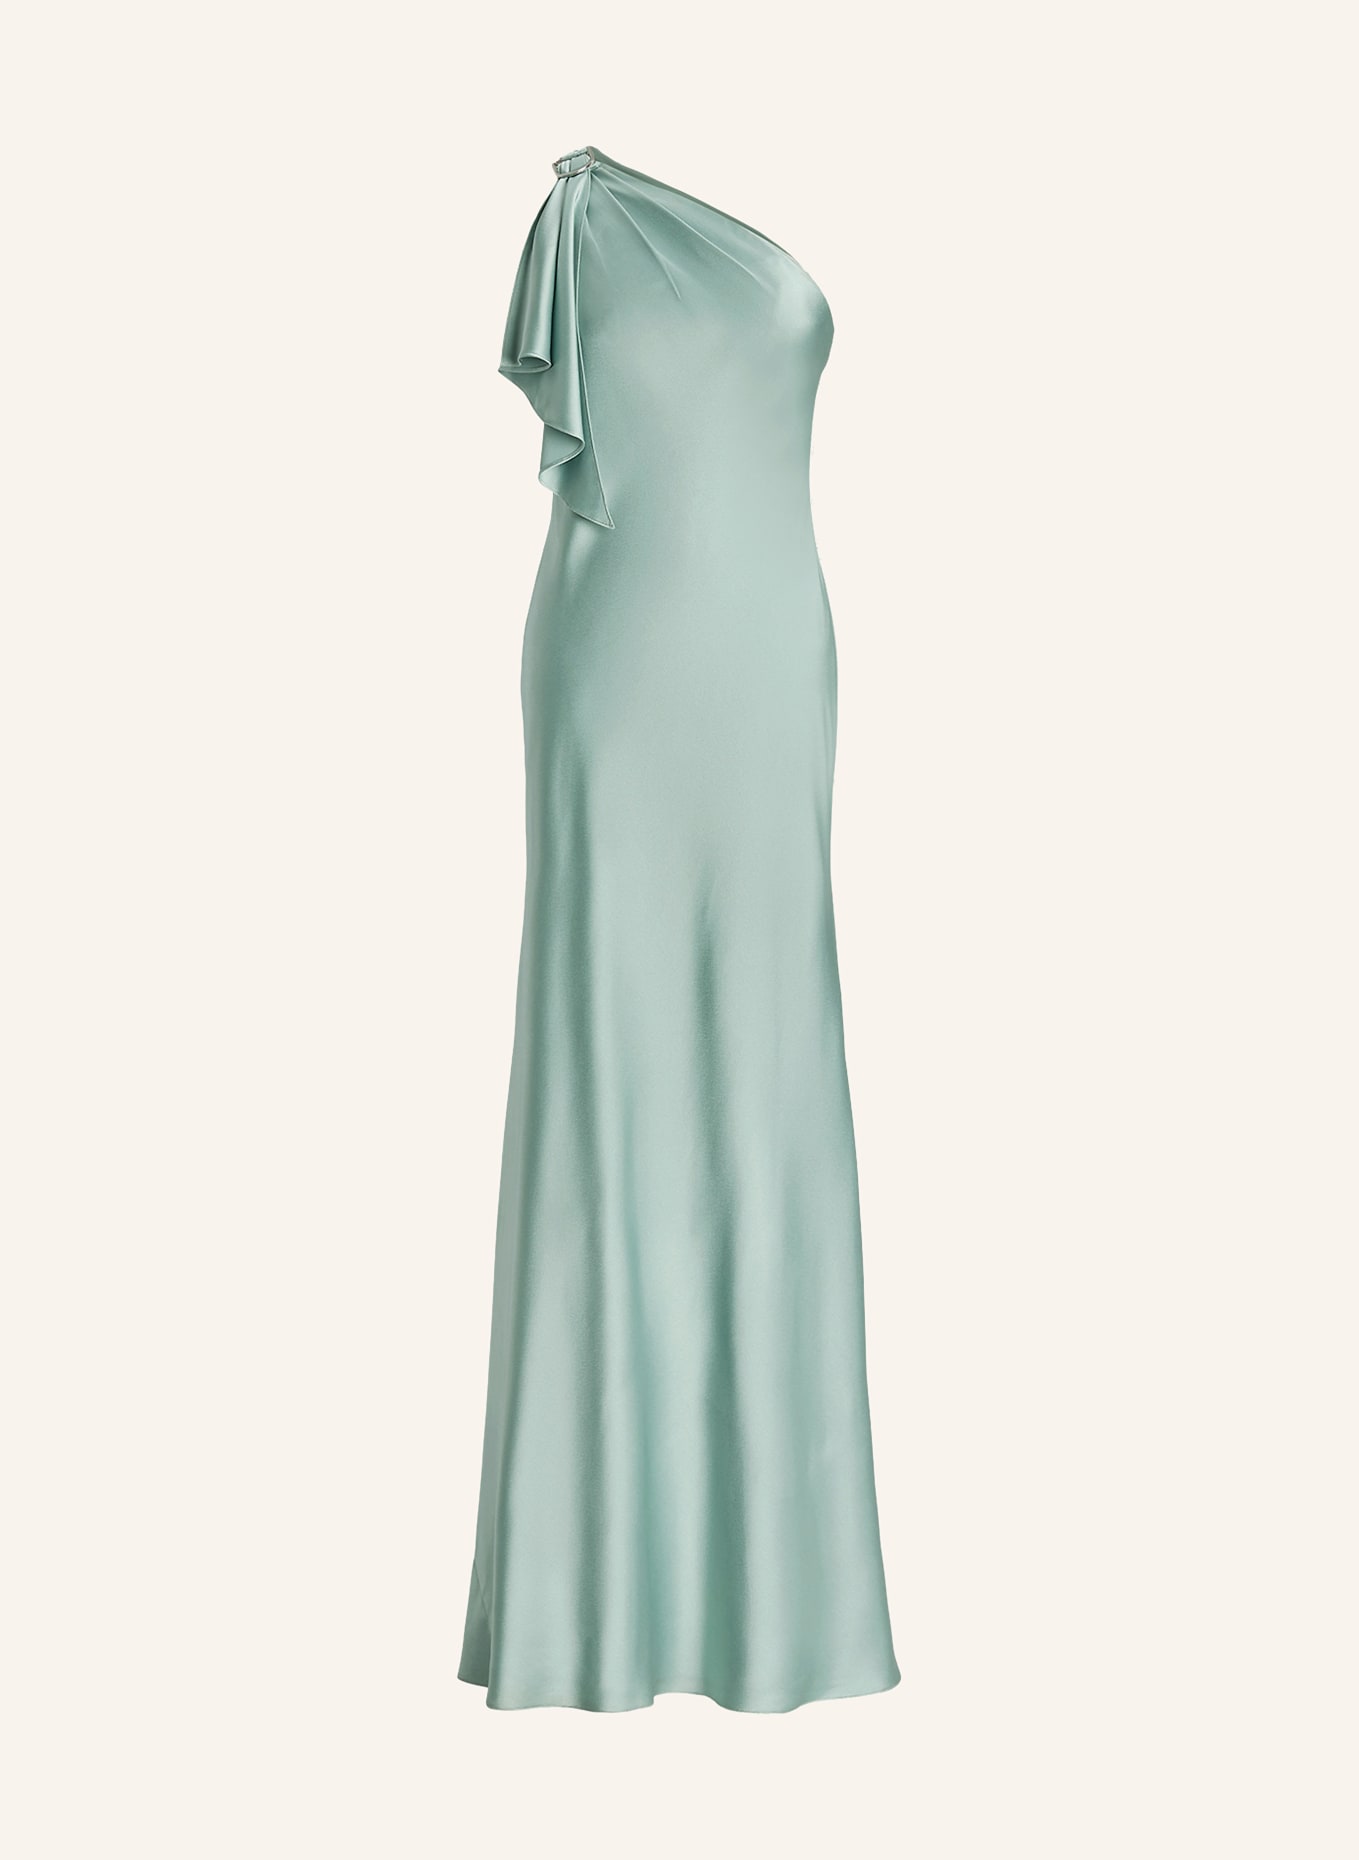 LAUREN RALPH LAUREN One-shoulder dress ELZIRA made of satin, Color: LIGHT GREEN (Image 1)